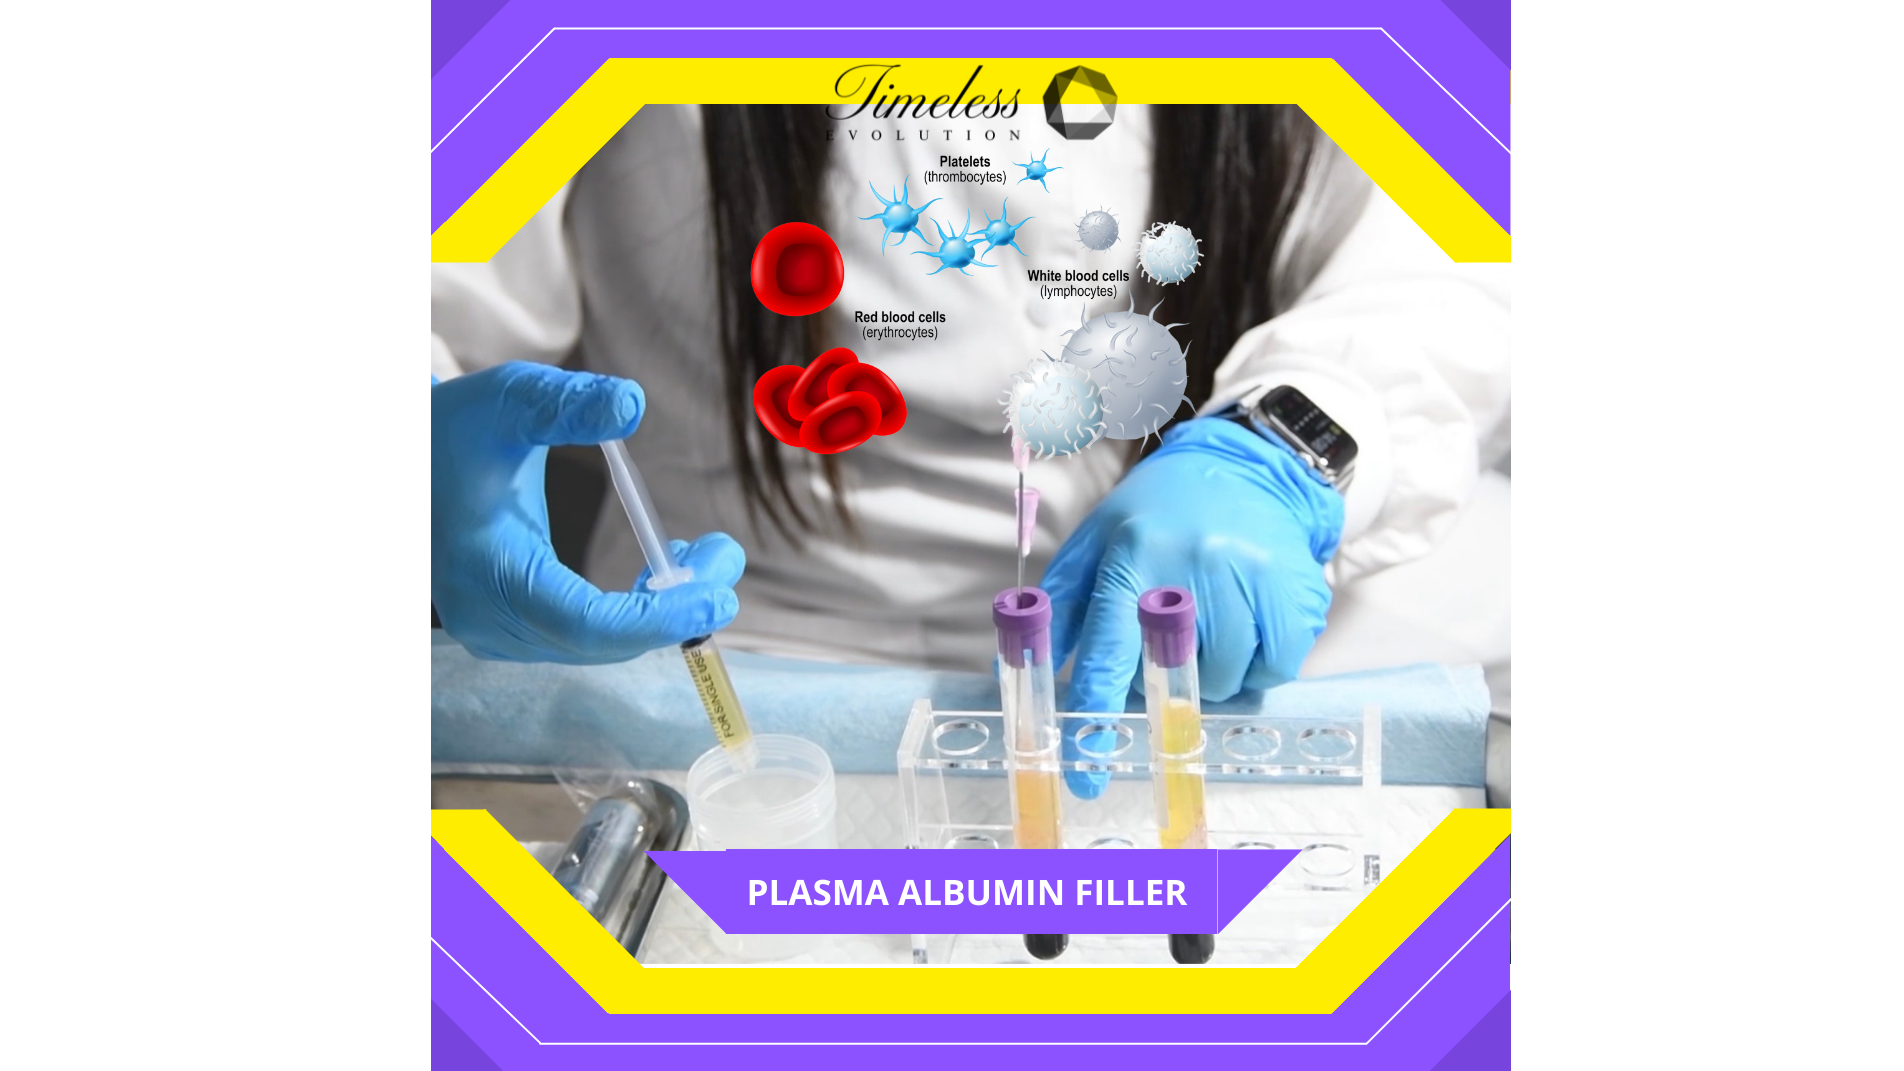 Best Dermal Filler Technology For Beauty Clinics Using Human Plasma Albumin